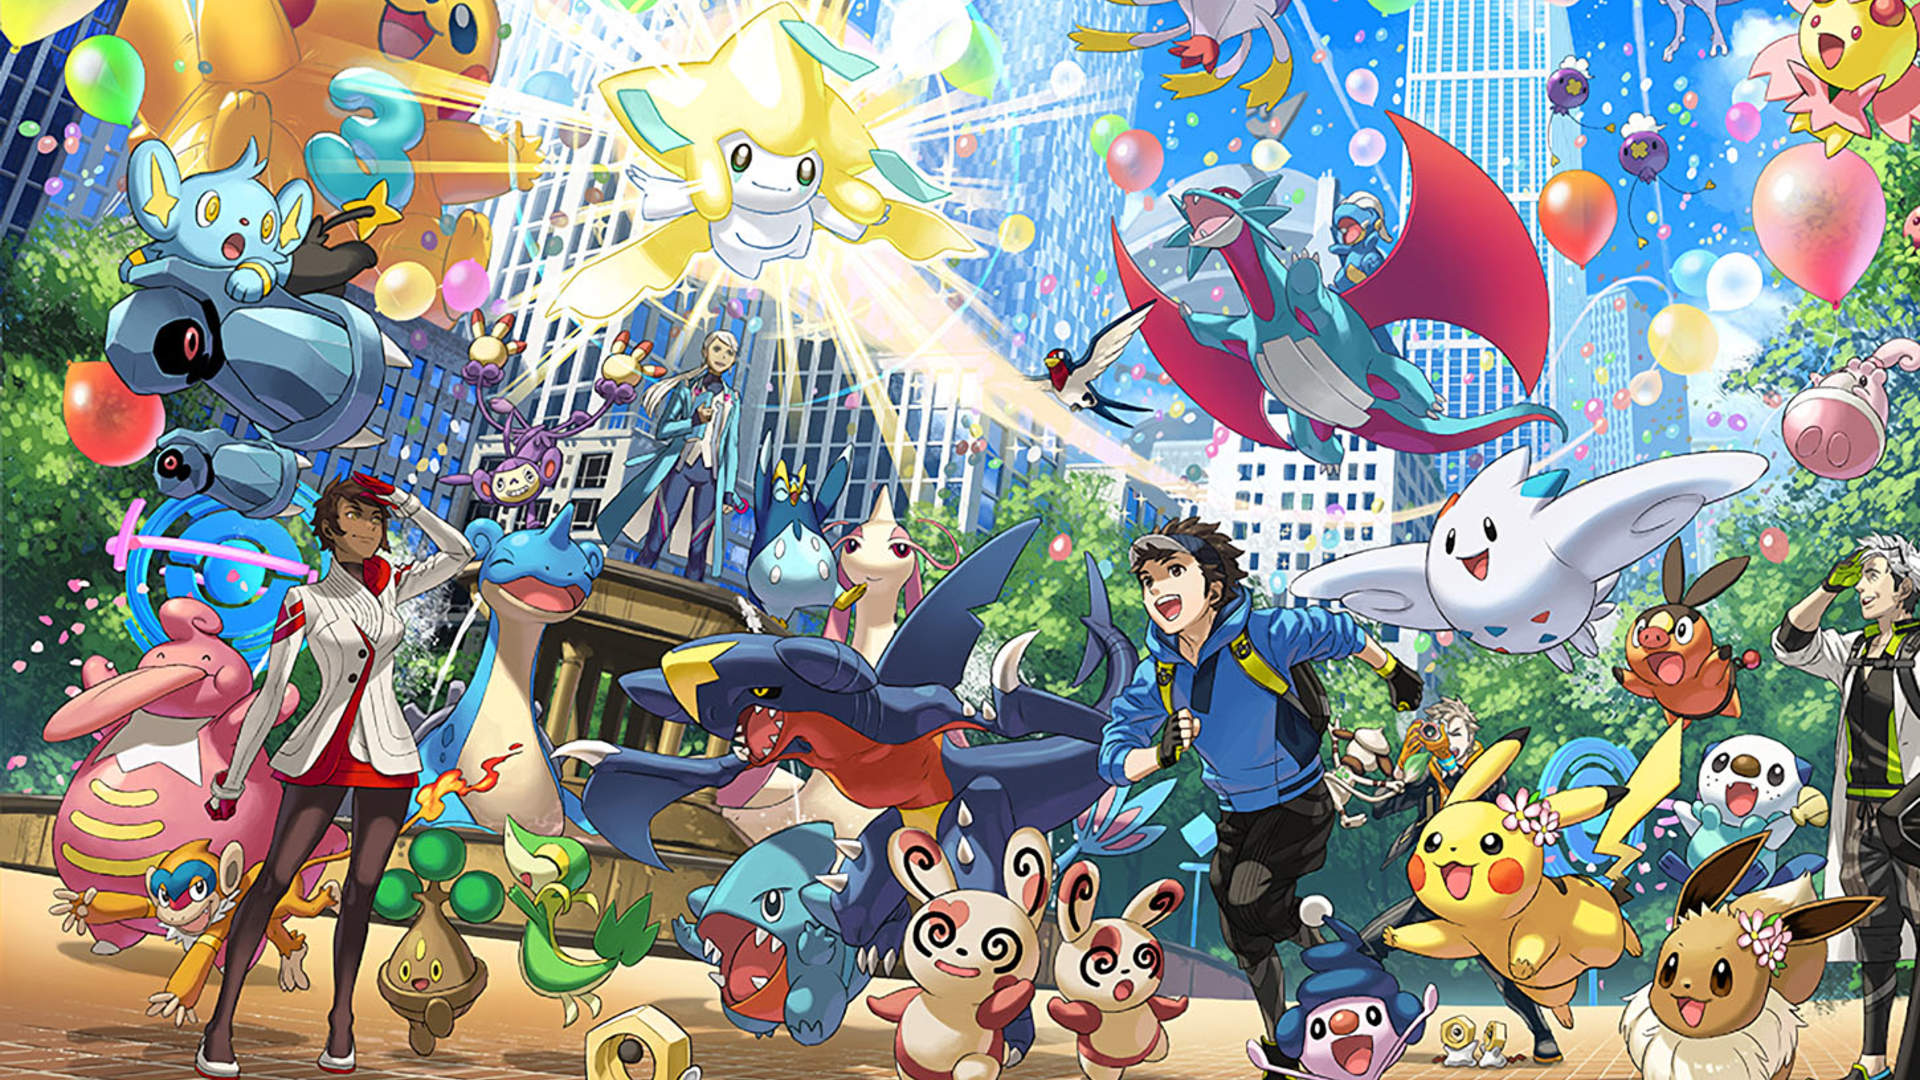 Vamos assistir ao The Game Awards 2020 juntos! – Pokémon GO